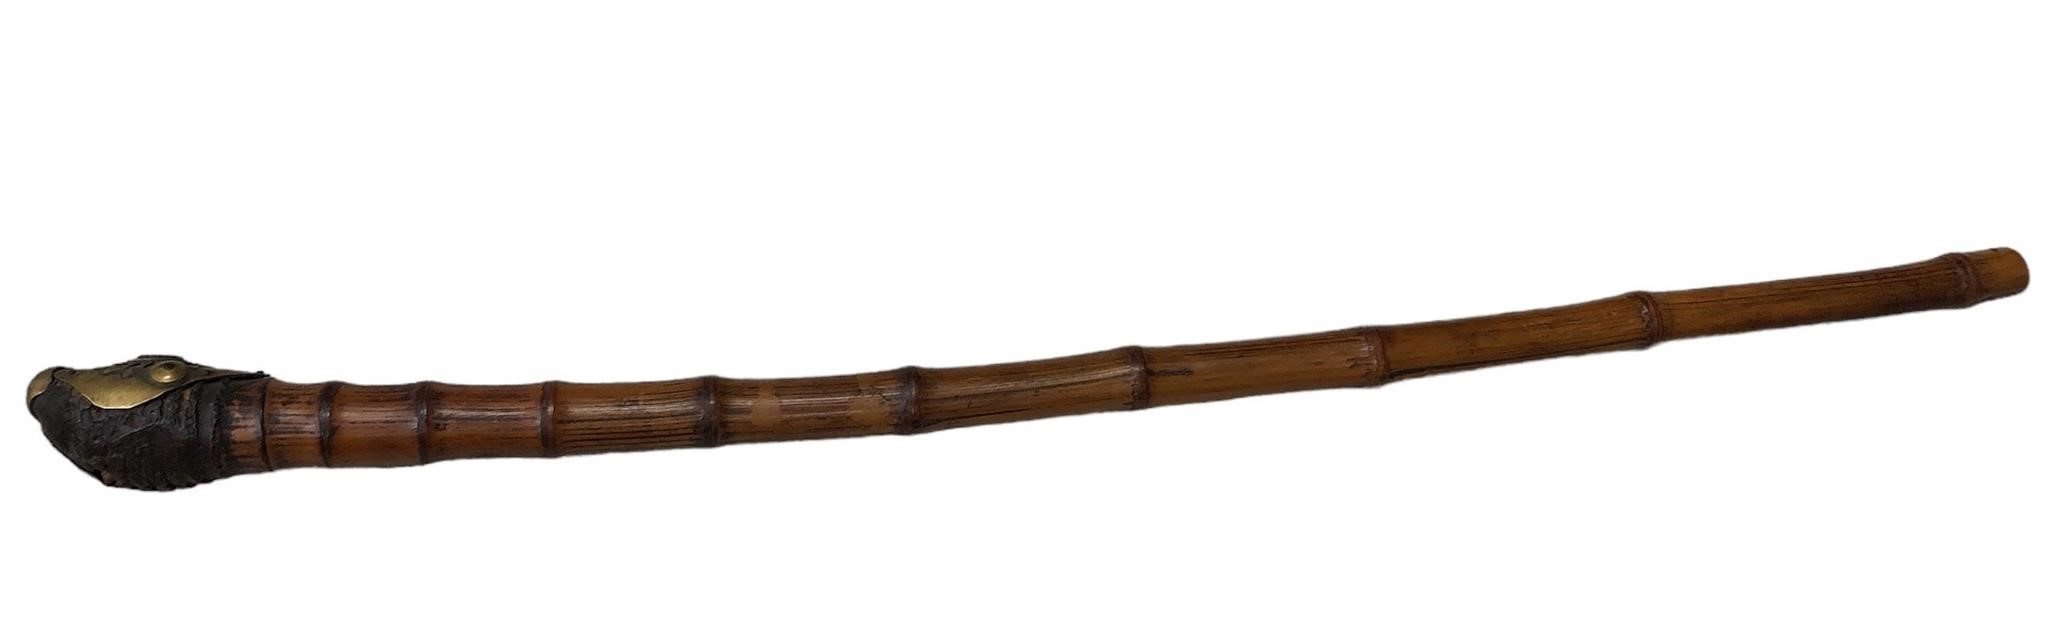 Antique Bamboo Opium Pipe